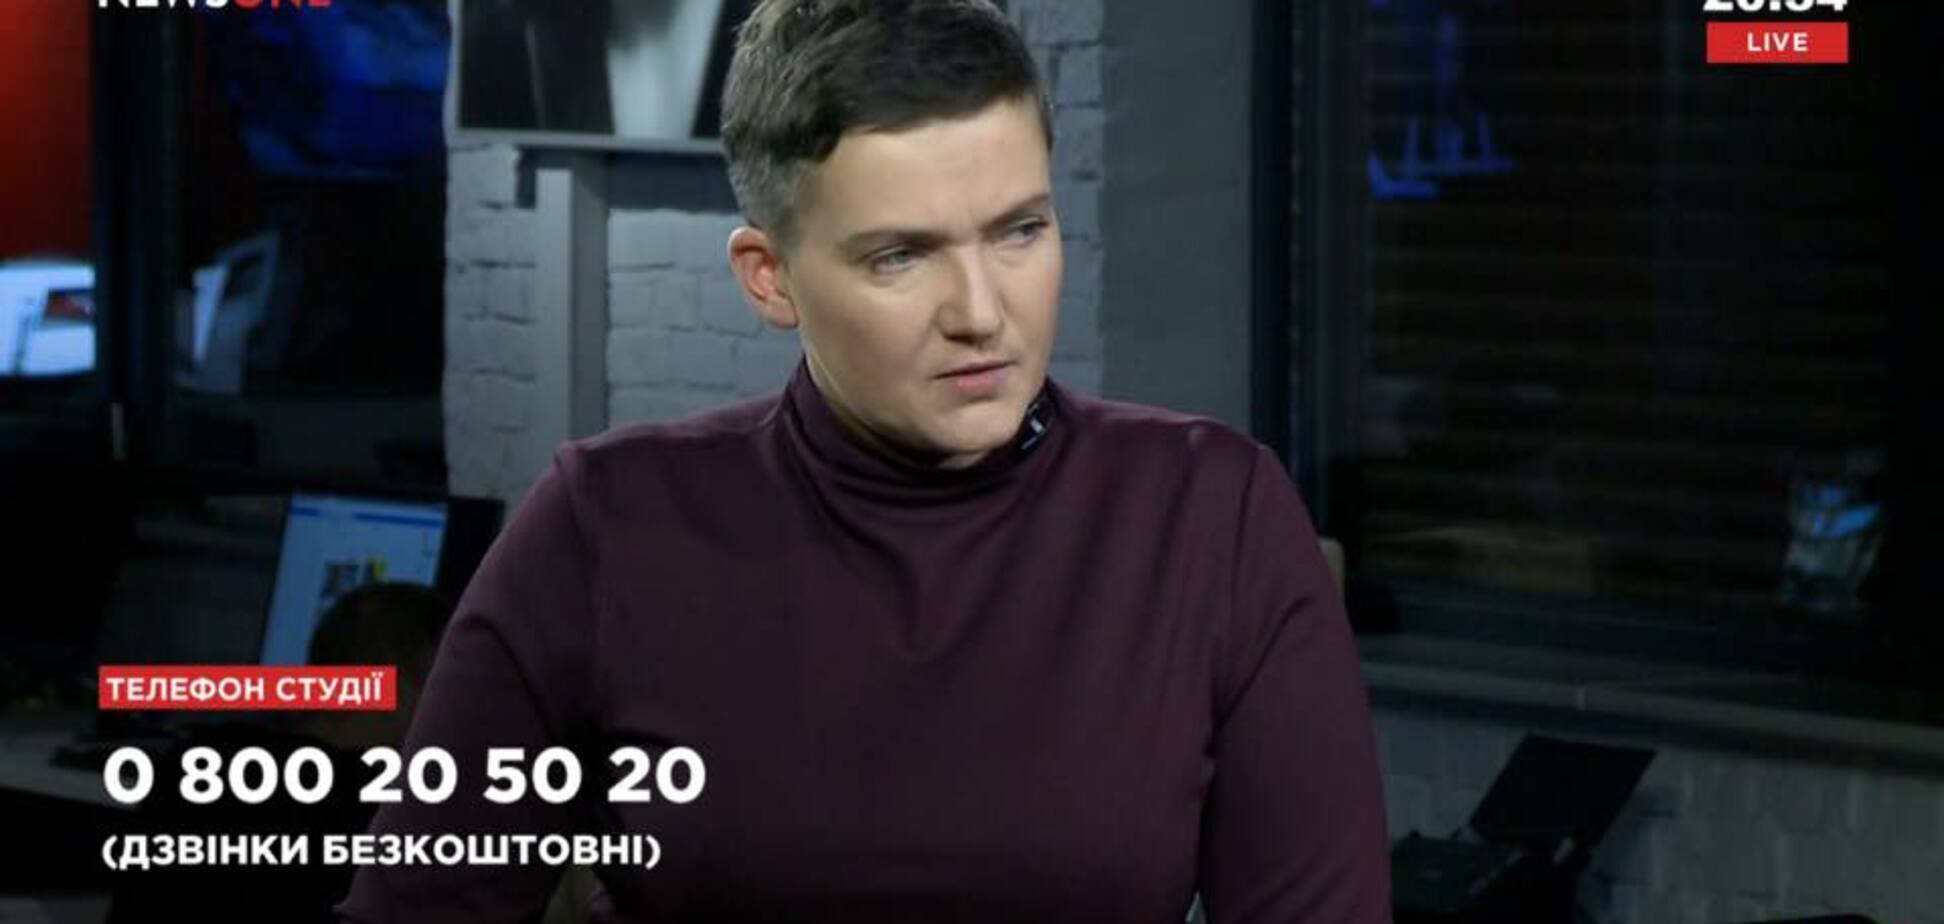 'Медведчук использует Надю по полной': скандальное заявление Савченко возмутило сеть